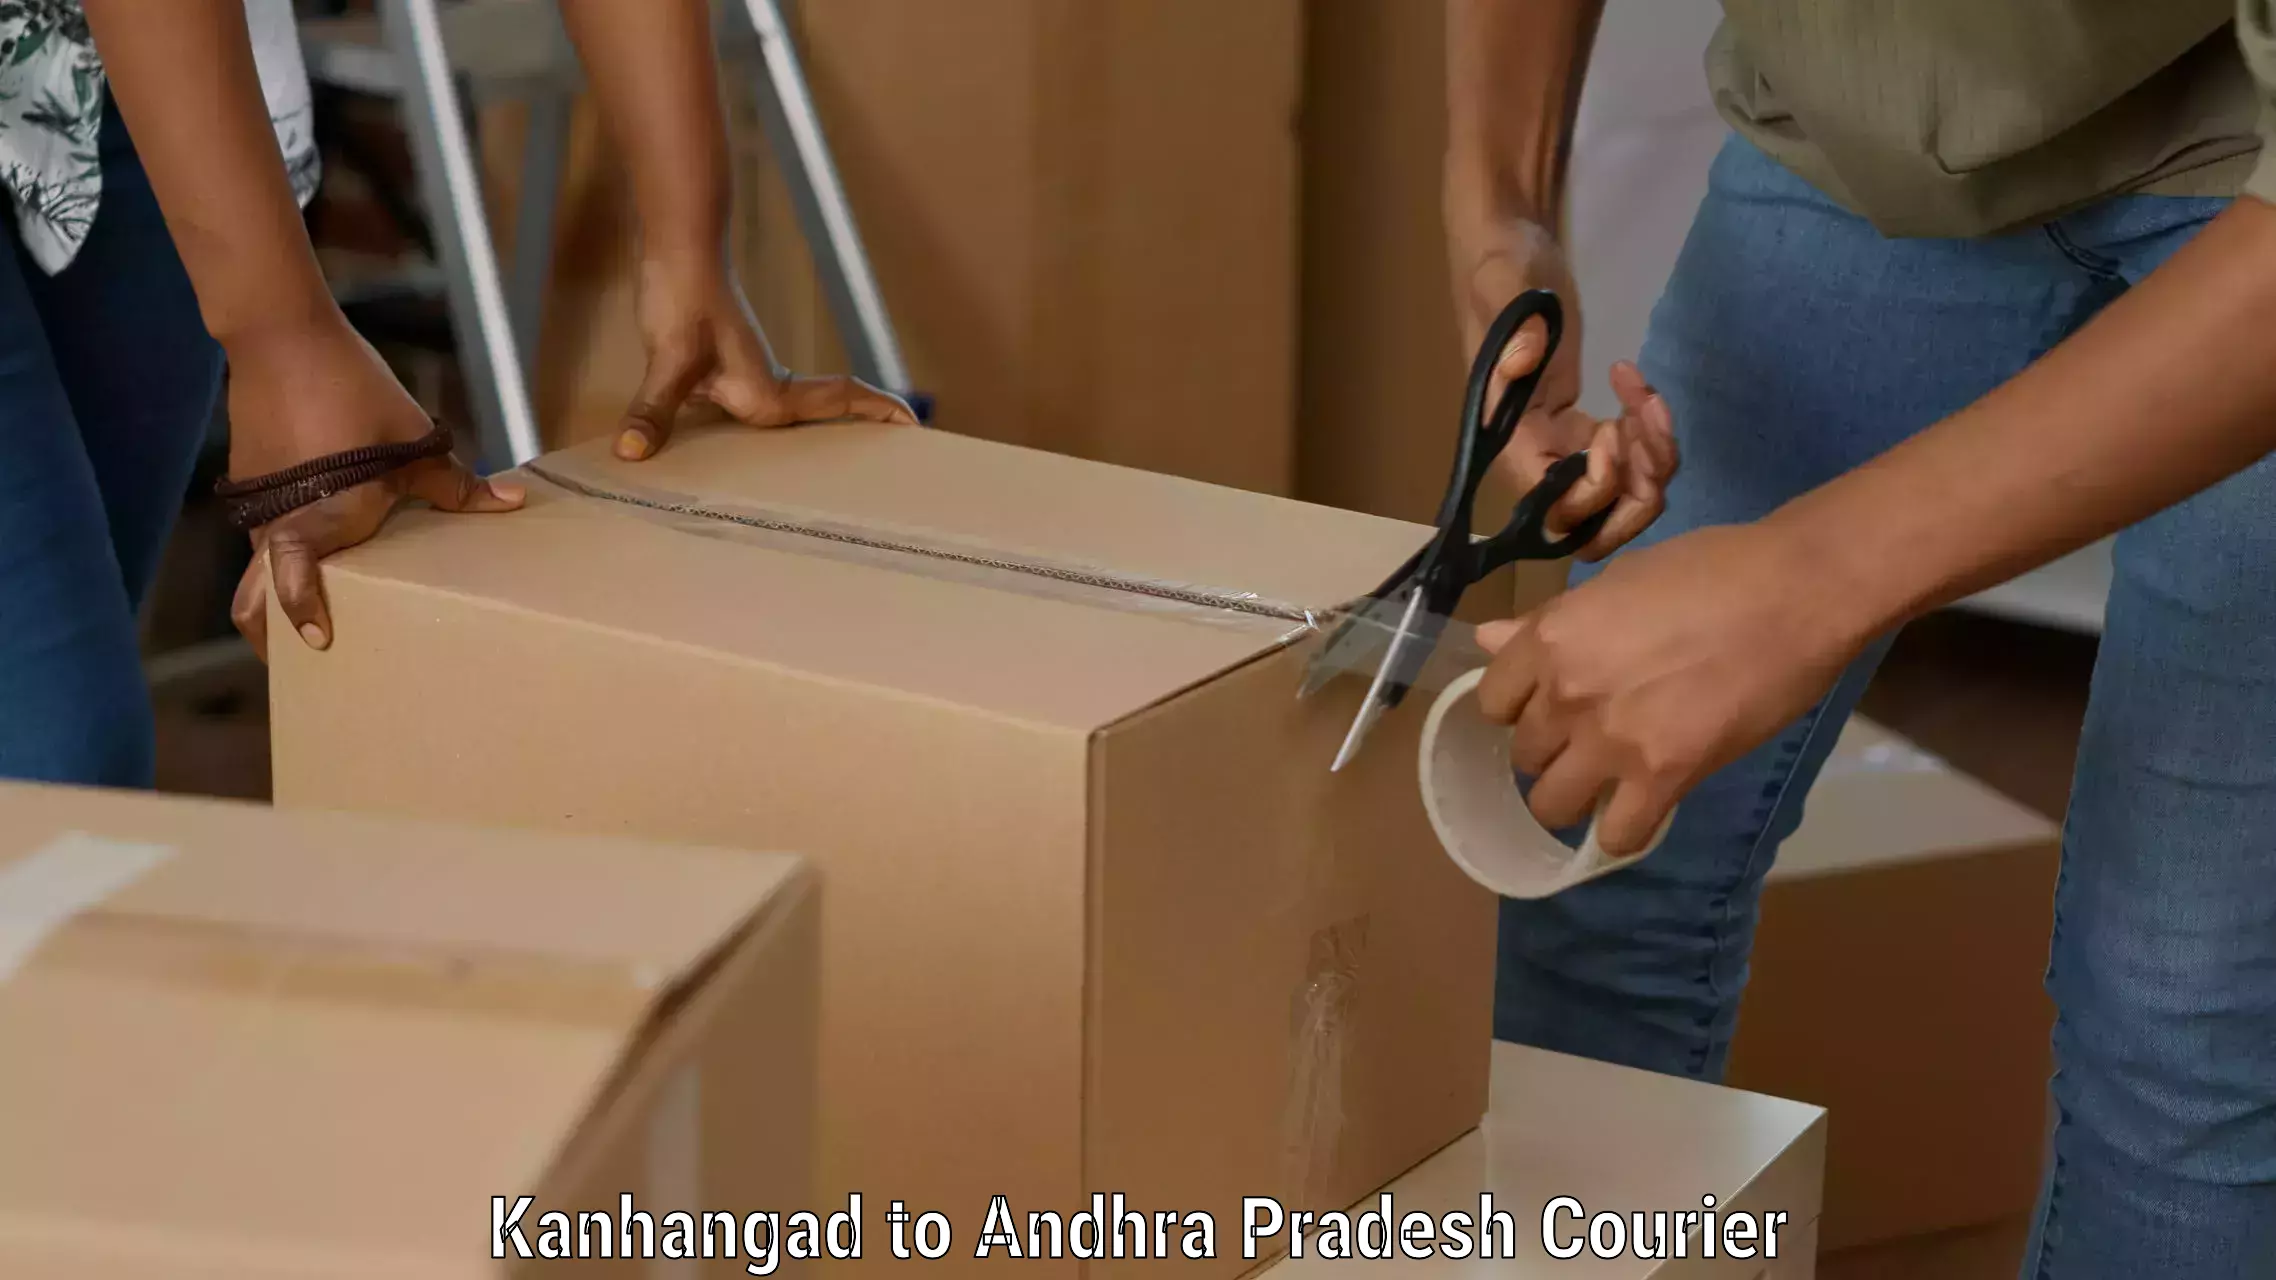 Express logistics service Kanhangad to Andhra Pradesh